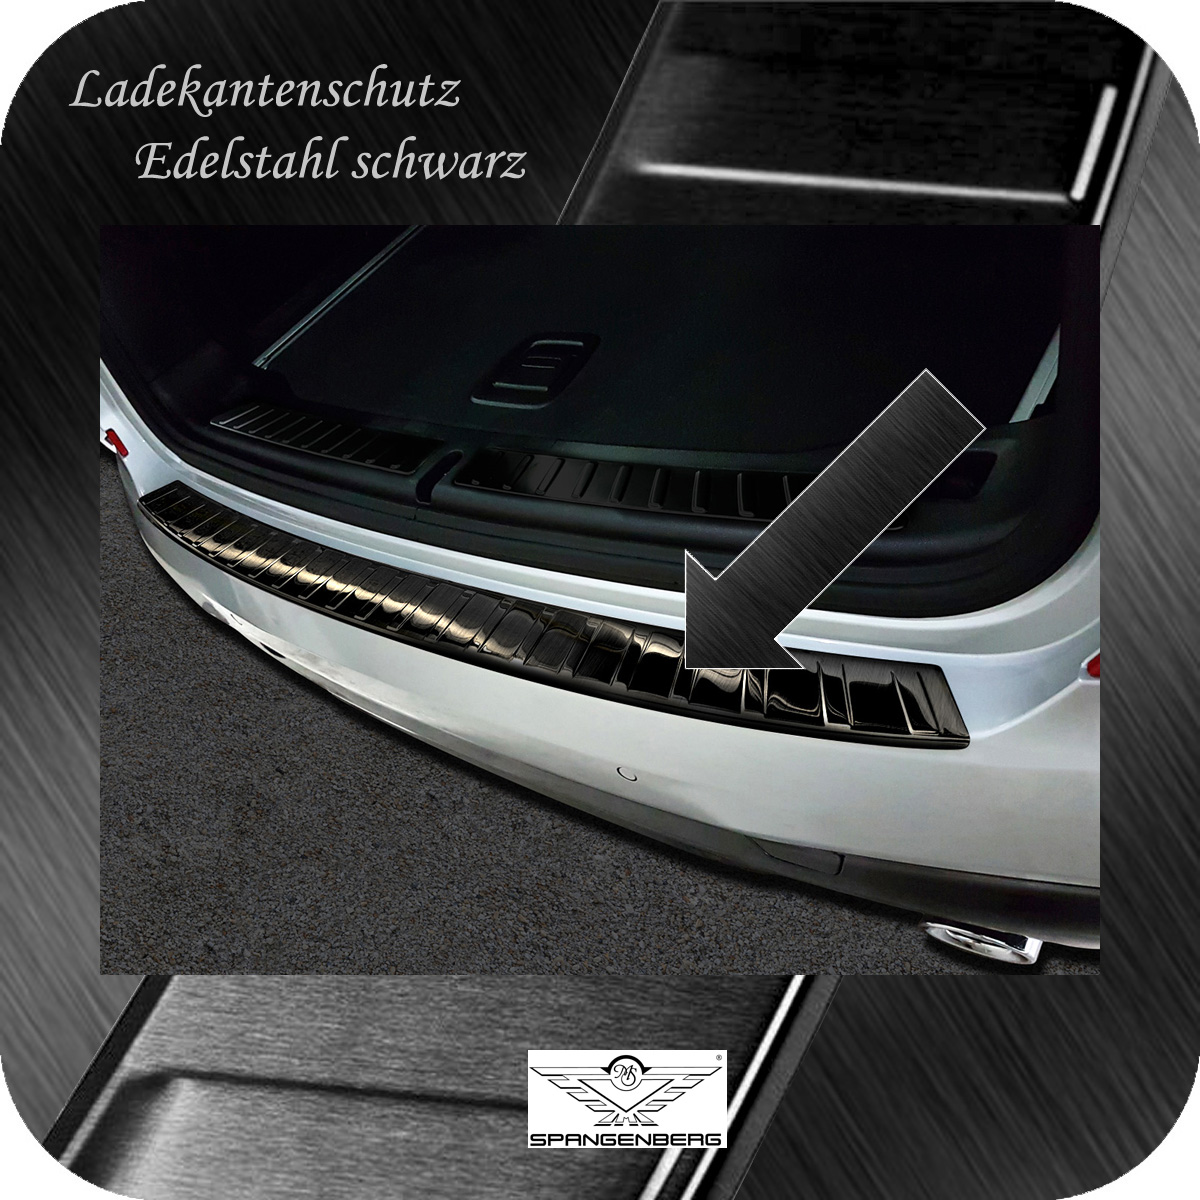 Ladekantenschutz Edelstahl schwarz für BMW X3 Typ G01 ab 10.17- 3245174